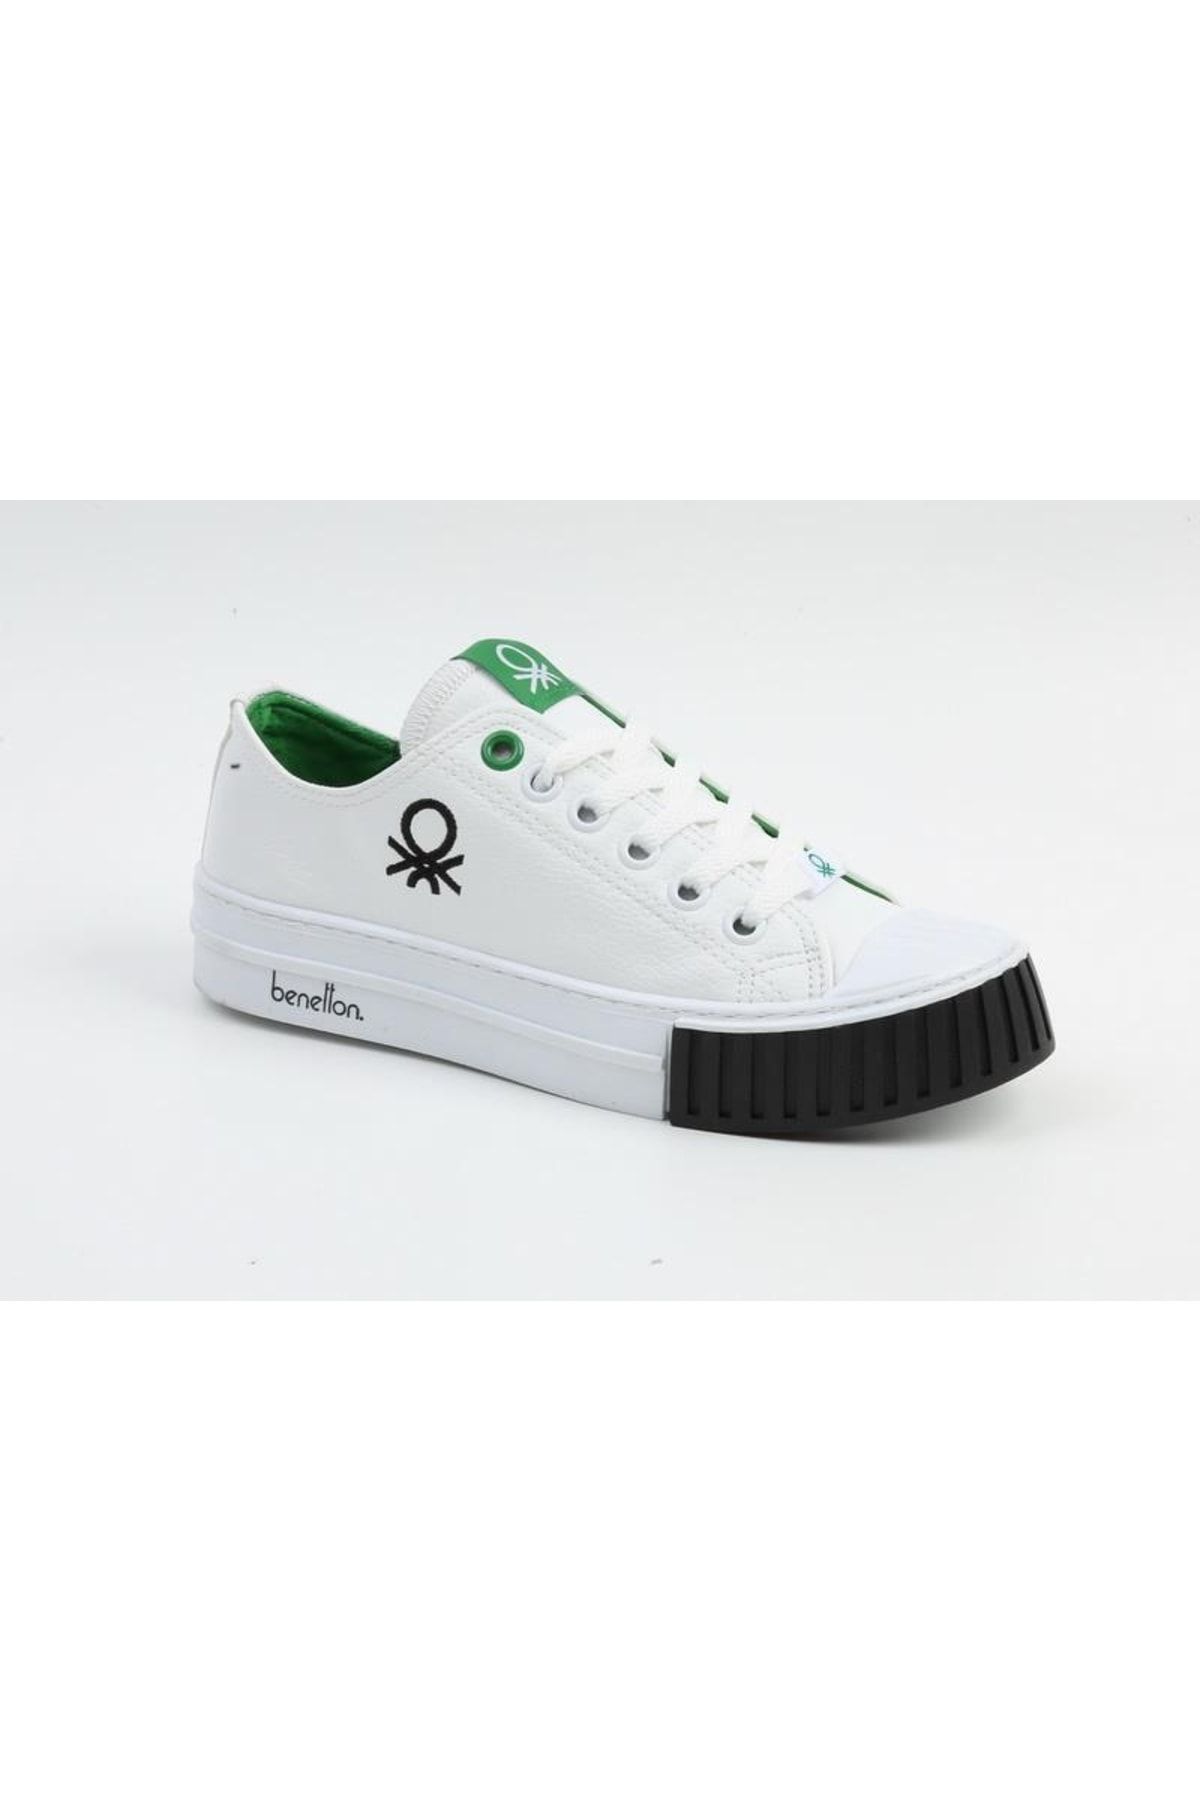 Benetton ® | Bn-30532 - 3374 Beyaz Siyah - Kadın Spor Ayakkabı